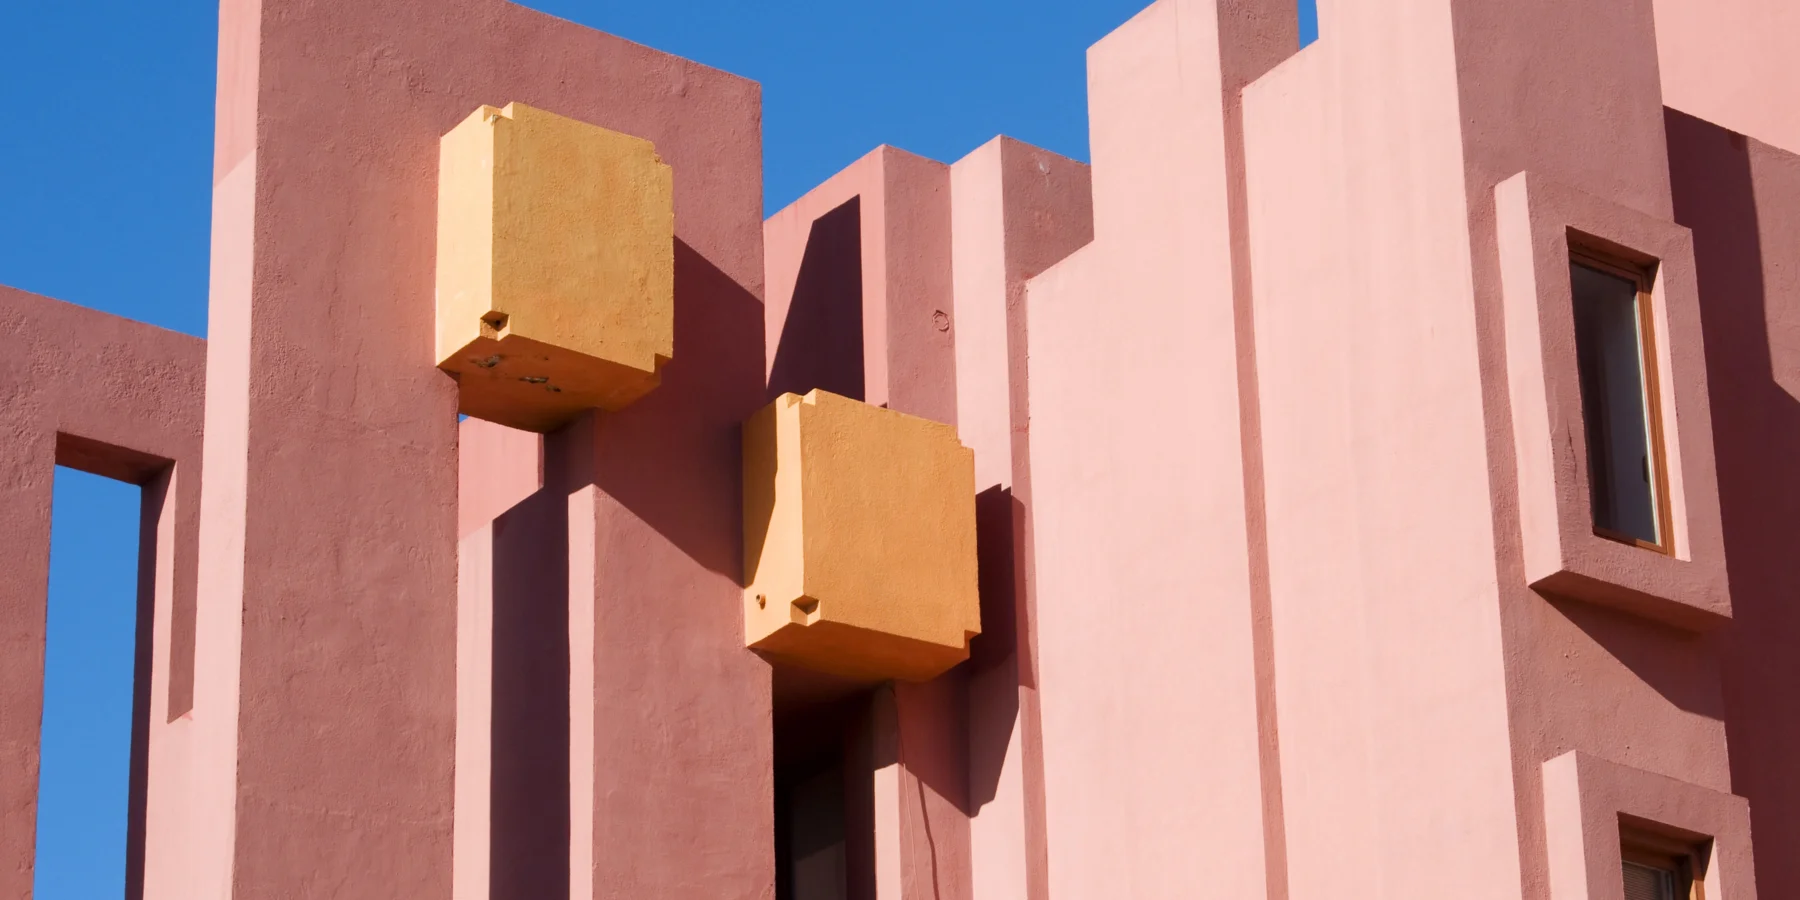 Изображение знаменитого и отмеченного наградами здания La Muralla Roja, спроектированного архитектором Рикардо Бофиллом в Кальпе.